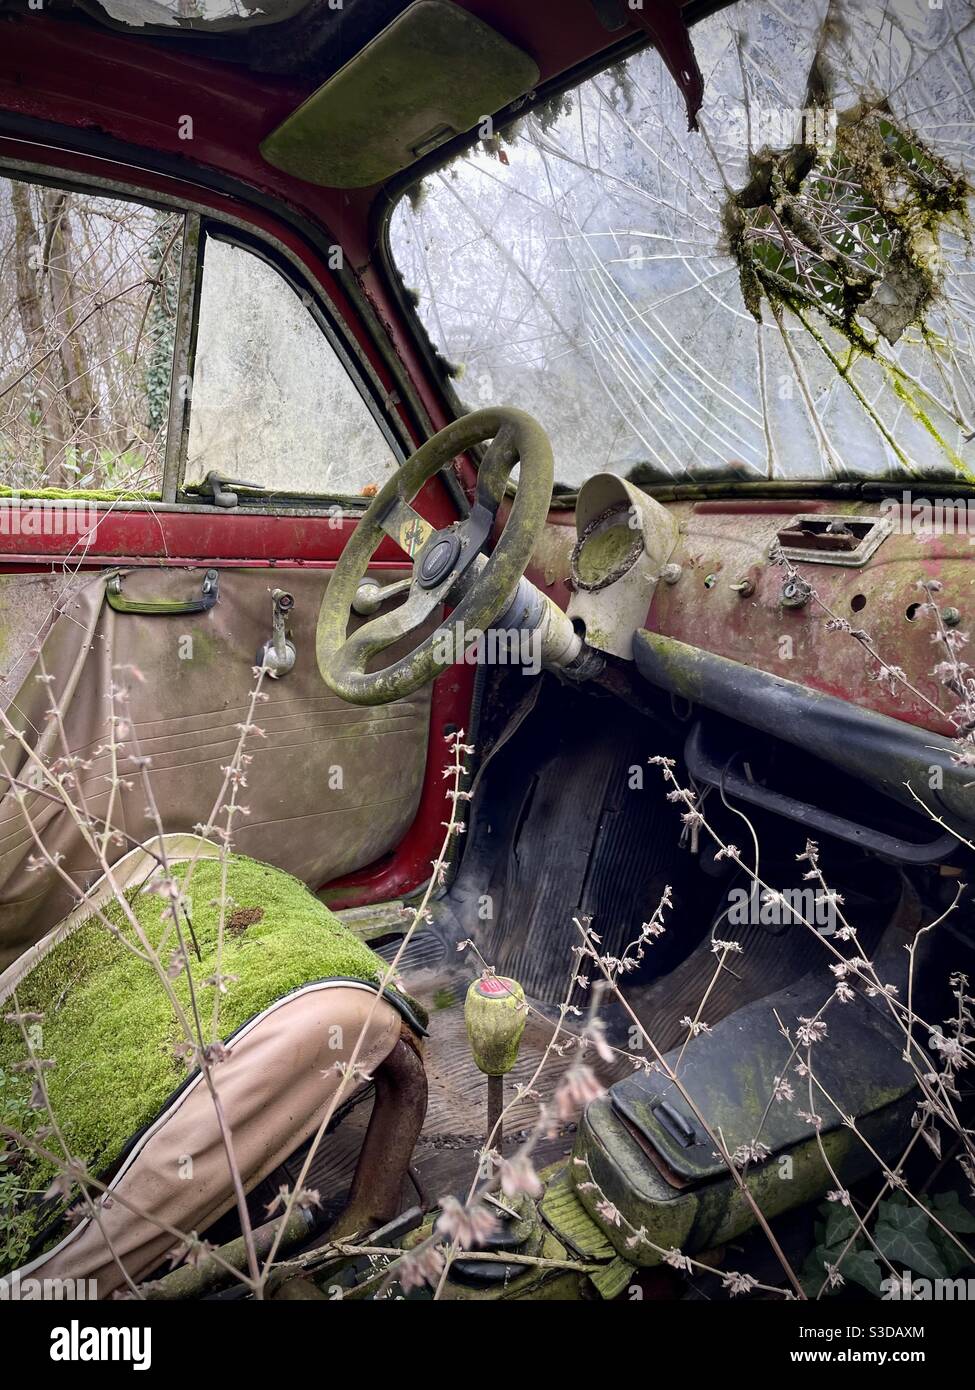 Der Innenraum eines alten Fiat 500 Auto in einem verlassen Ländliche Gegend  in der Toskana Italien Stockfotografie - Alamy